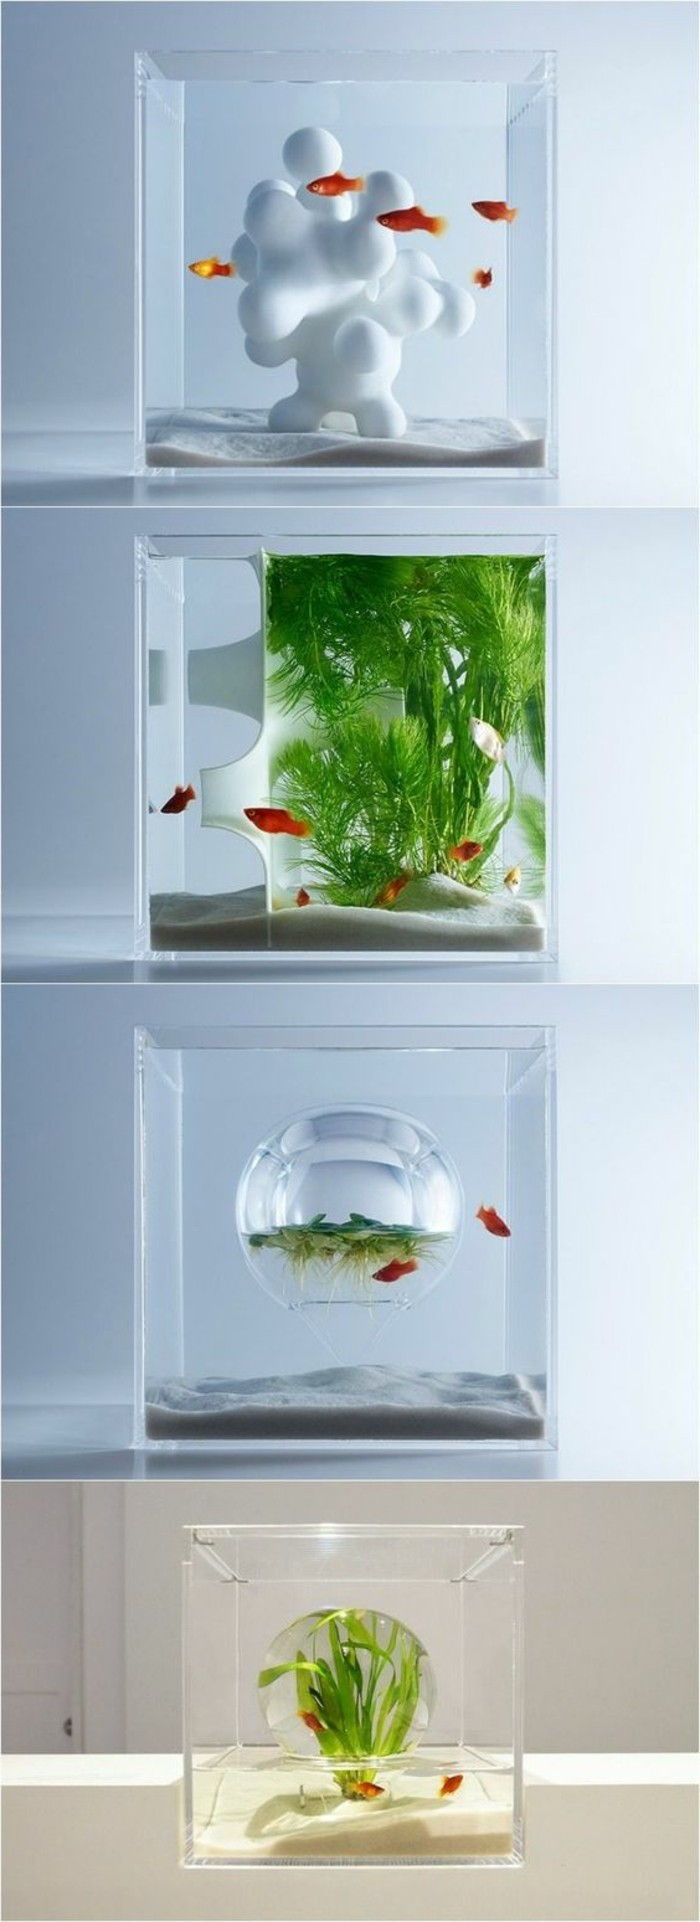 acquario-deco-acquario-per-pesci rossi-set-sabbia-acqua-pianta piccolo-acquario-acquario-dispositivo